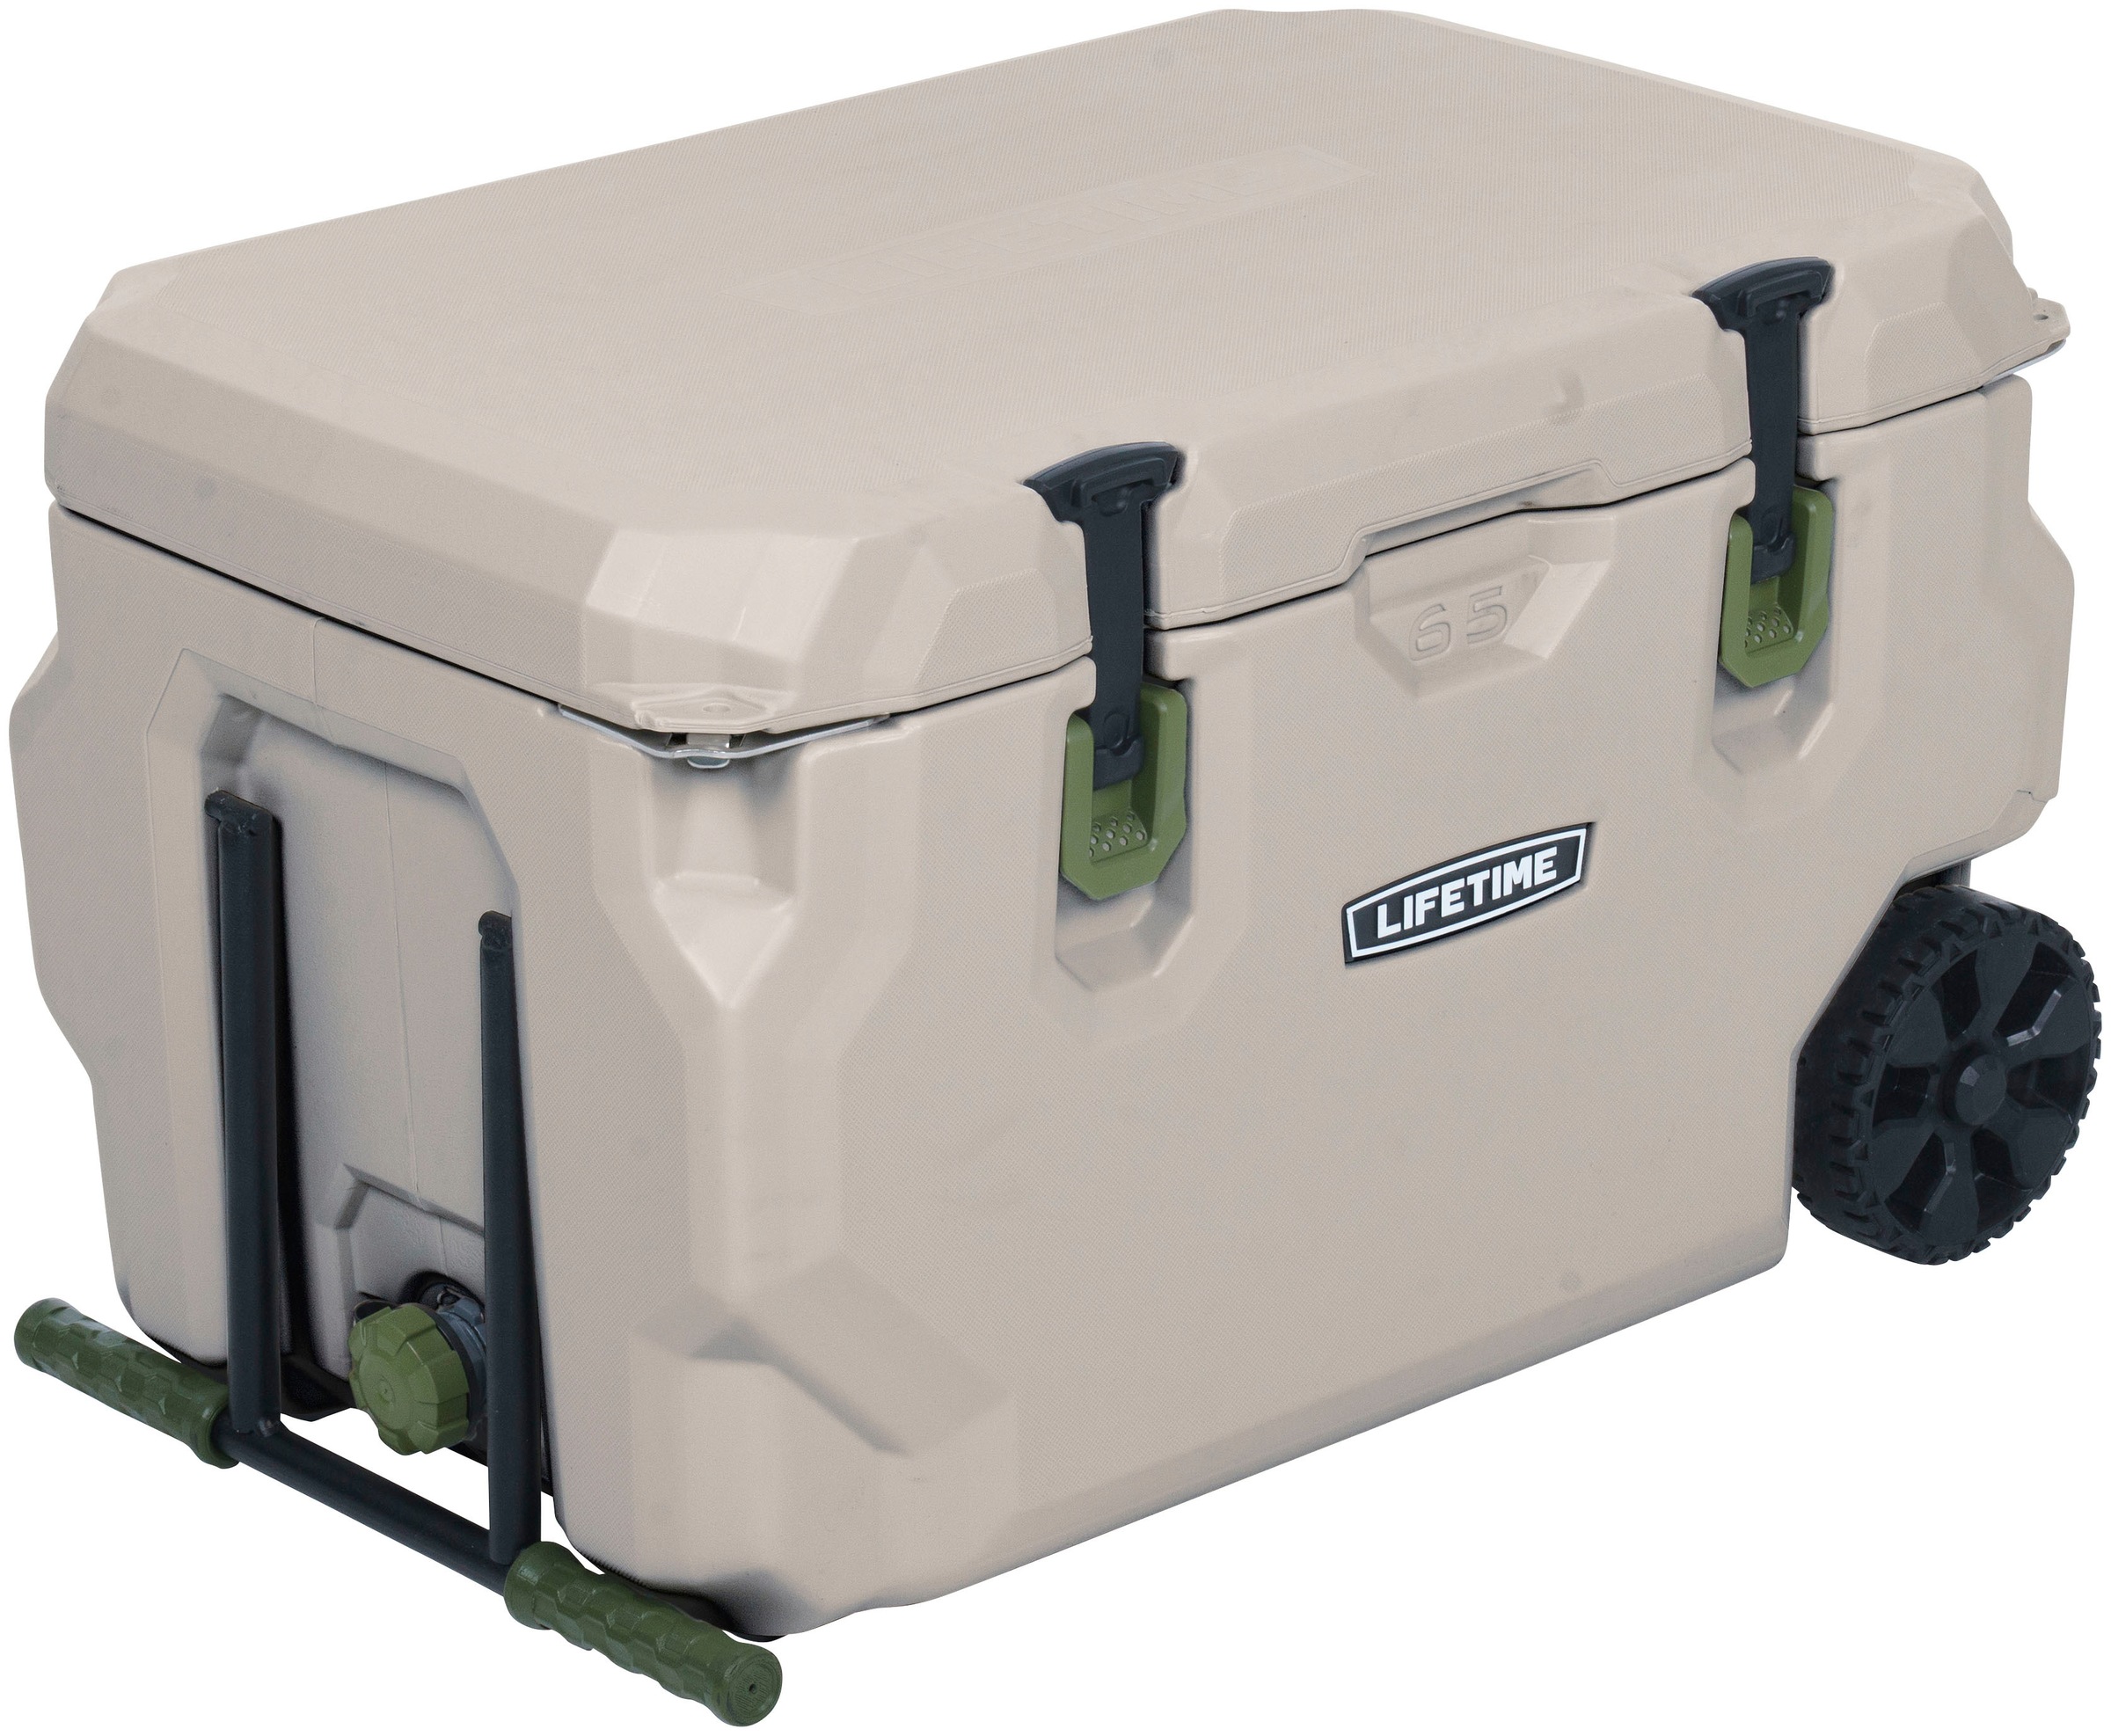 Lifetime Kühlbox "Kunststoff Kühlbox Premium 61,5 Liter", Beige, 72x46x45 cm